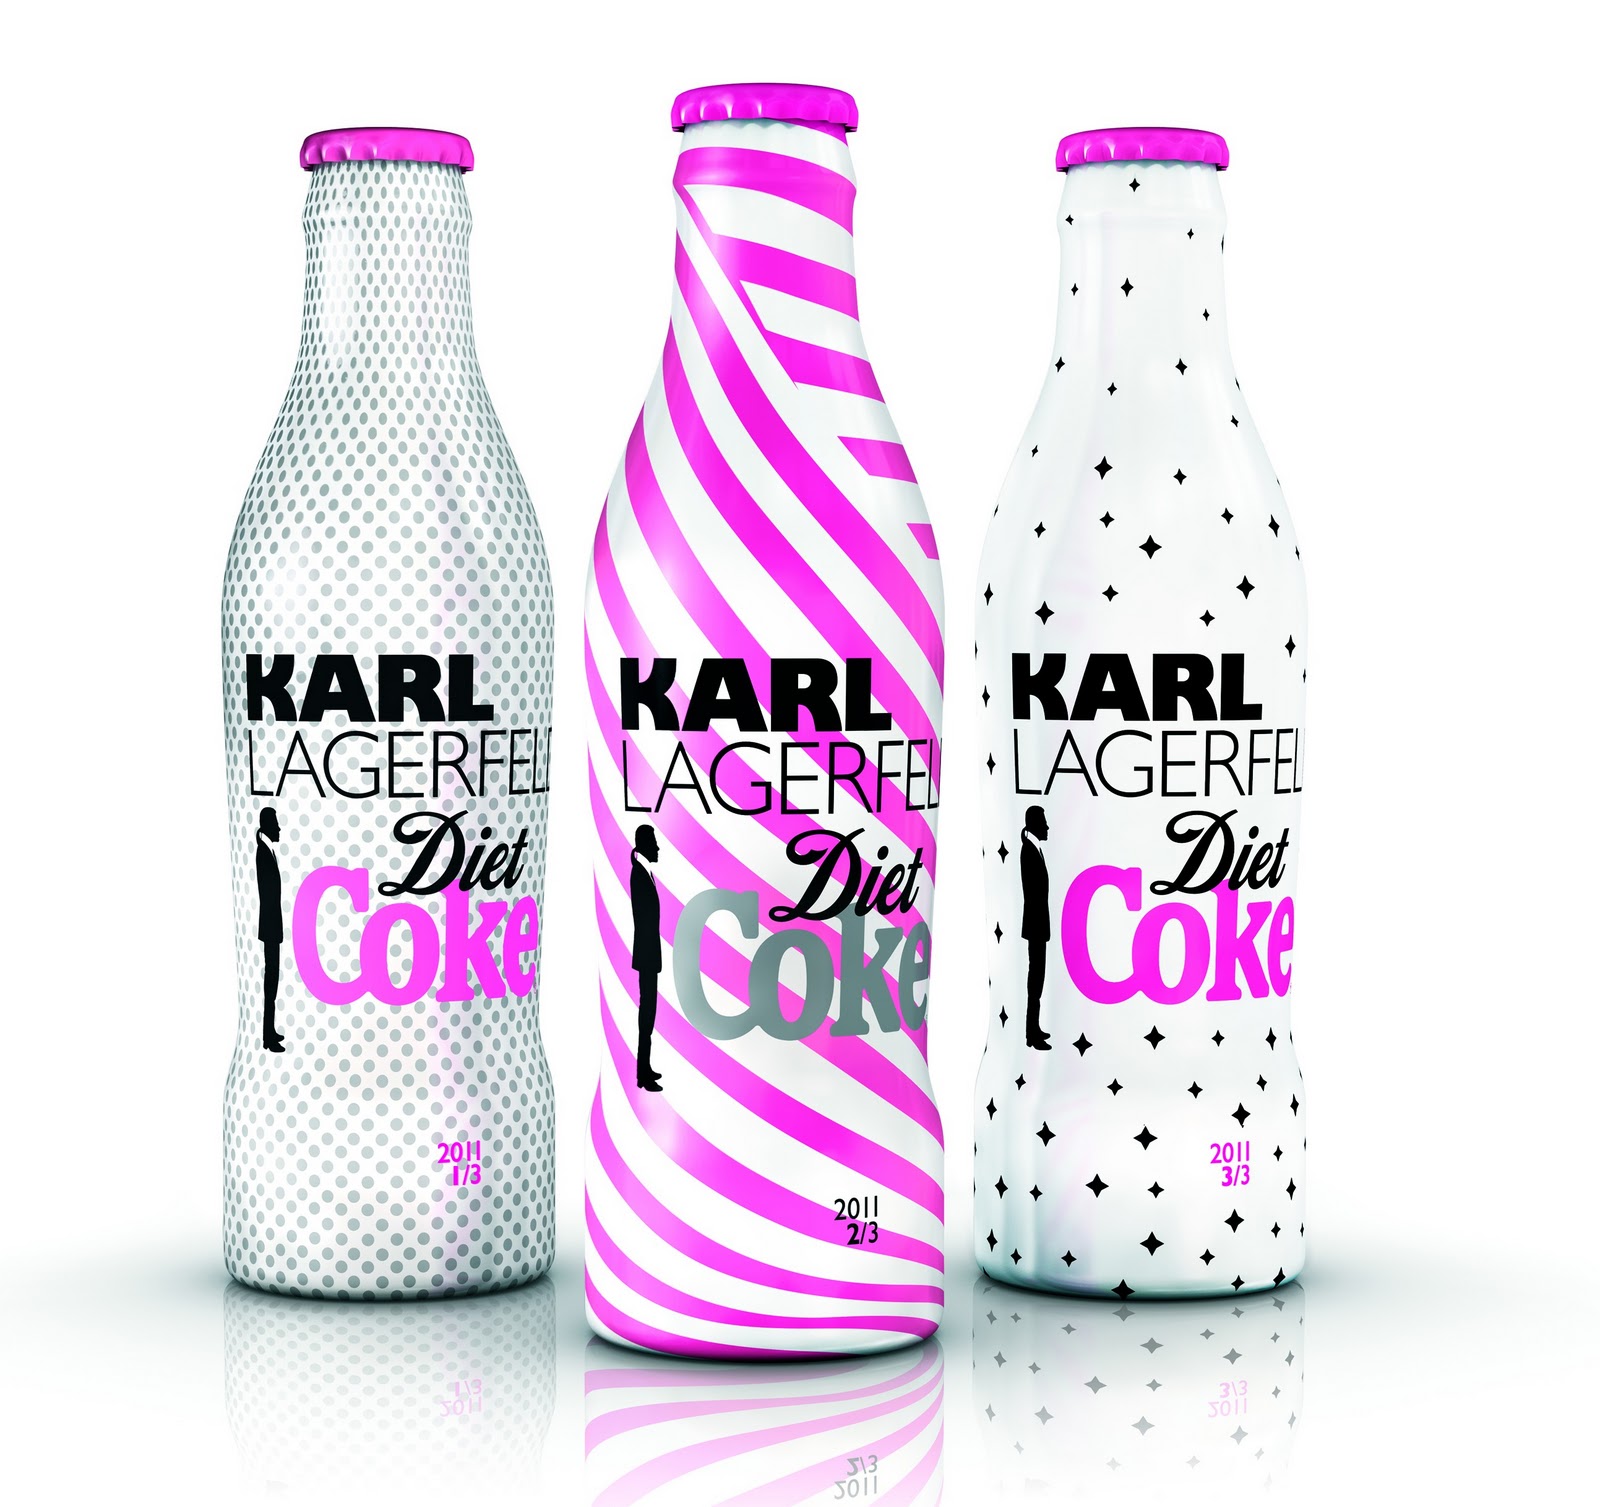 The Karl Lagerfeld Diet by Karl Lagerfeld